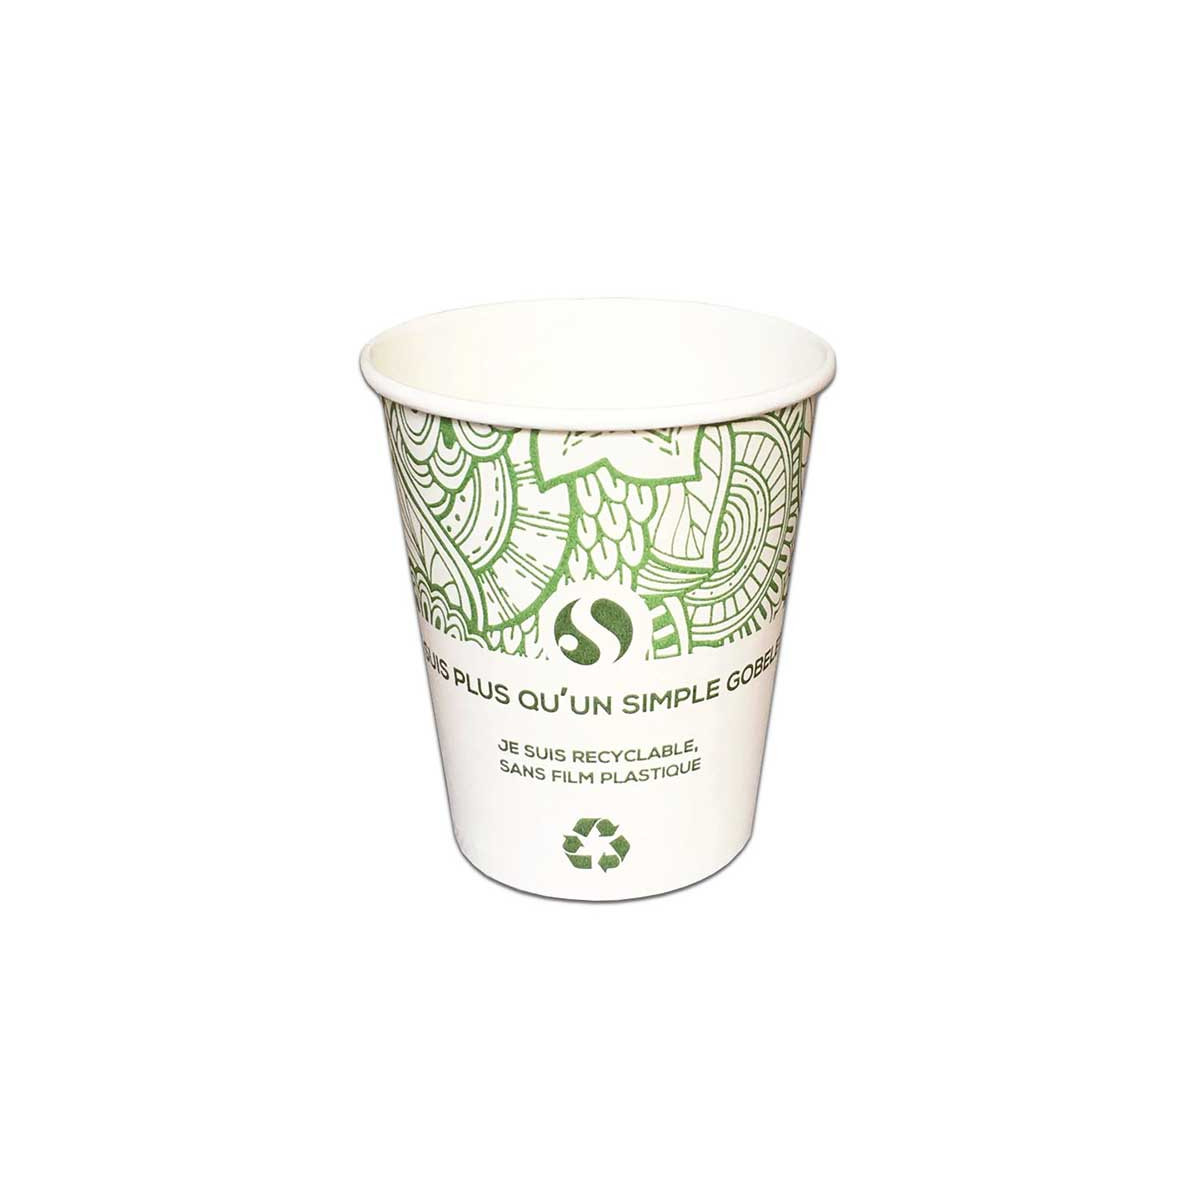 Packea packaging market - Vente de gobelets en carton pour café